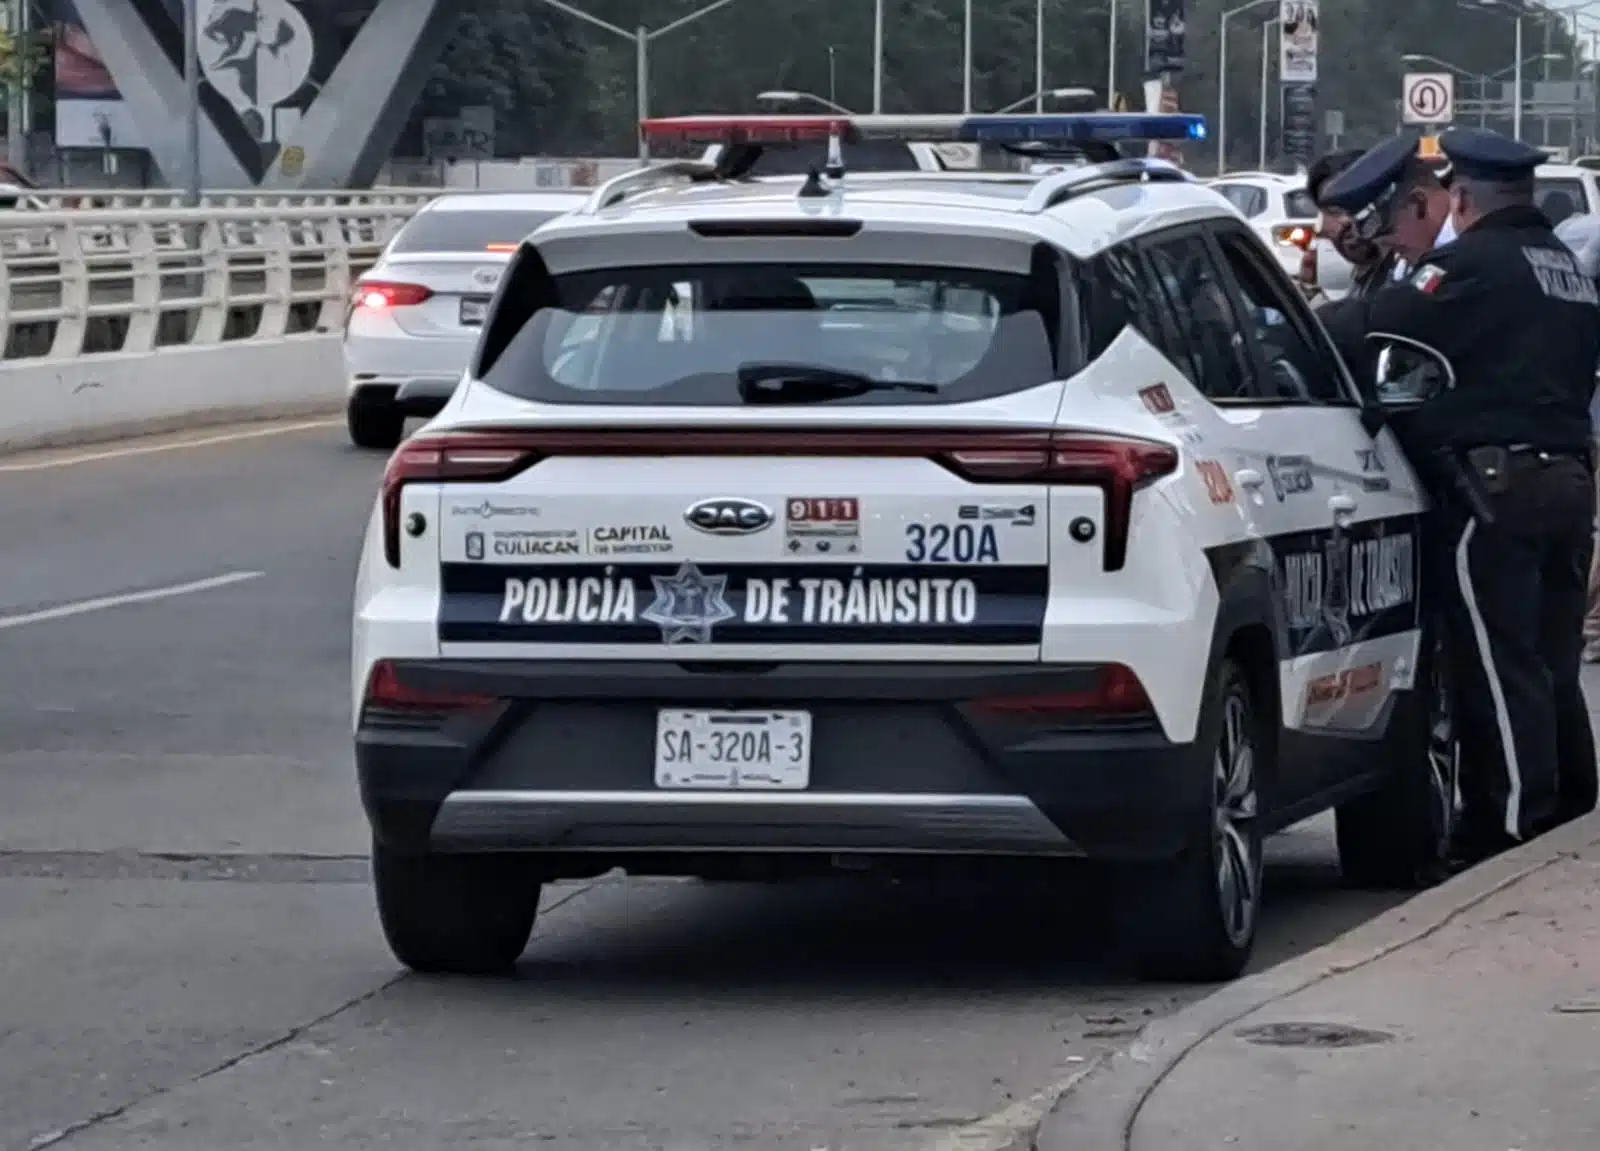 Policía de transito